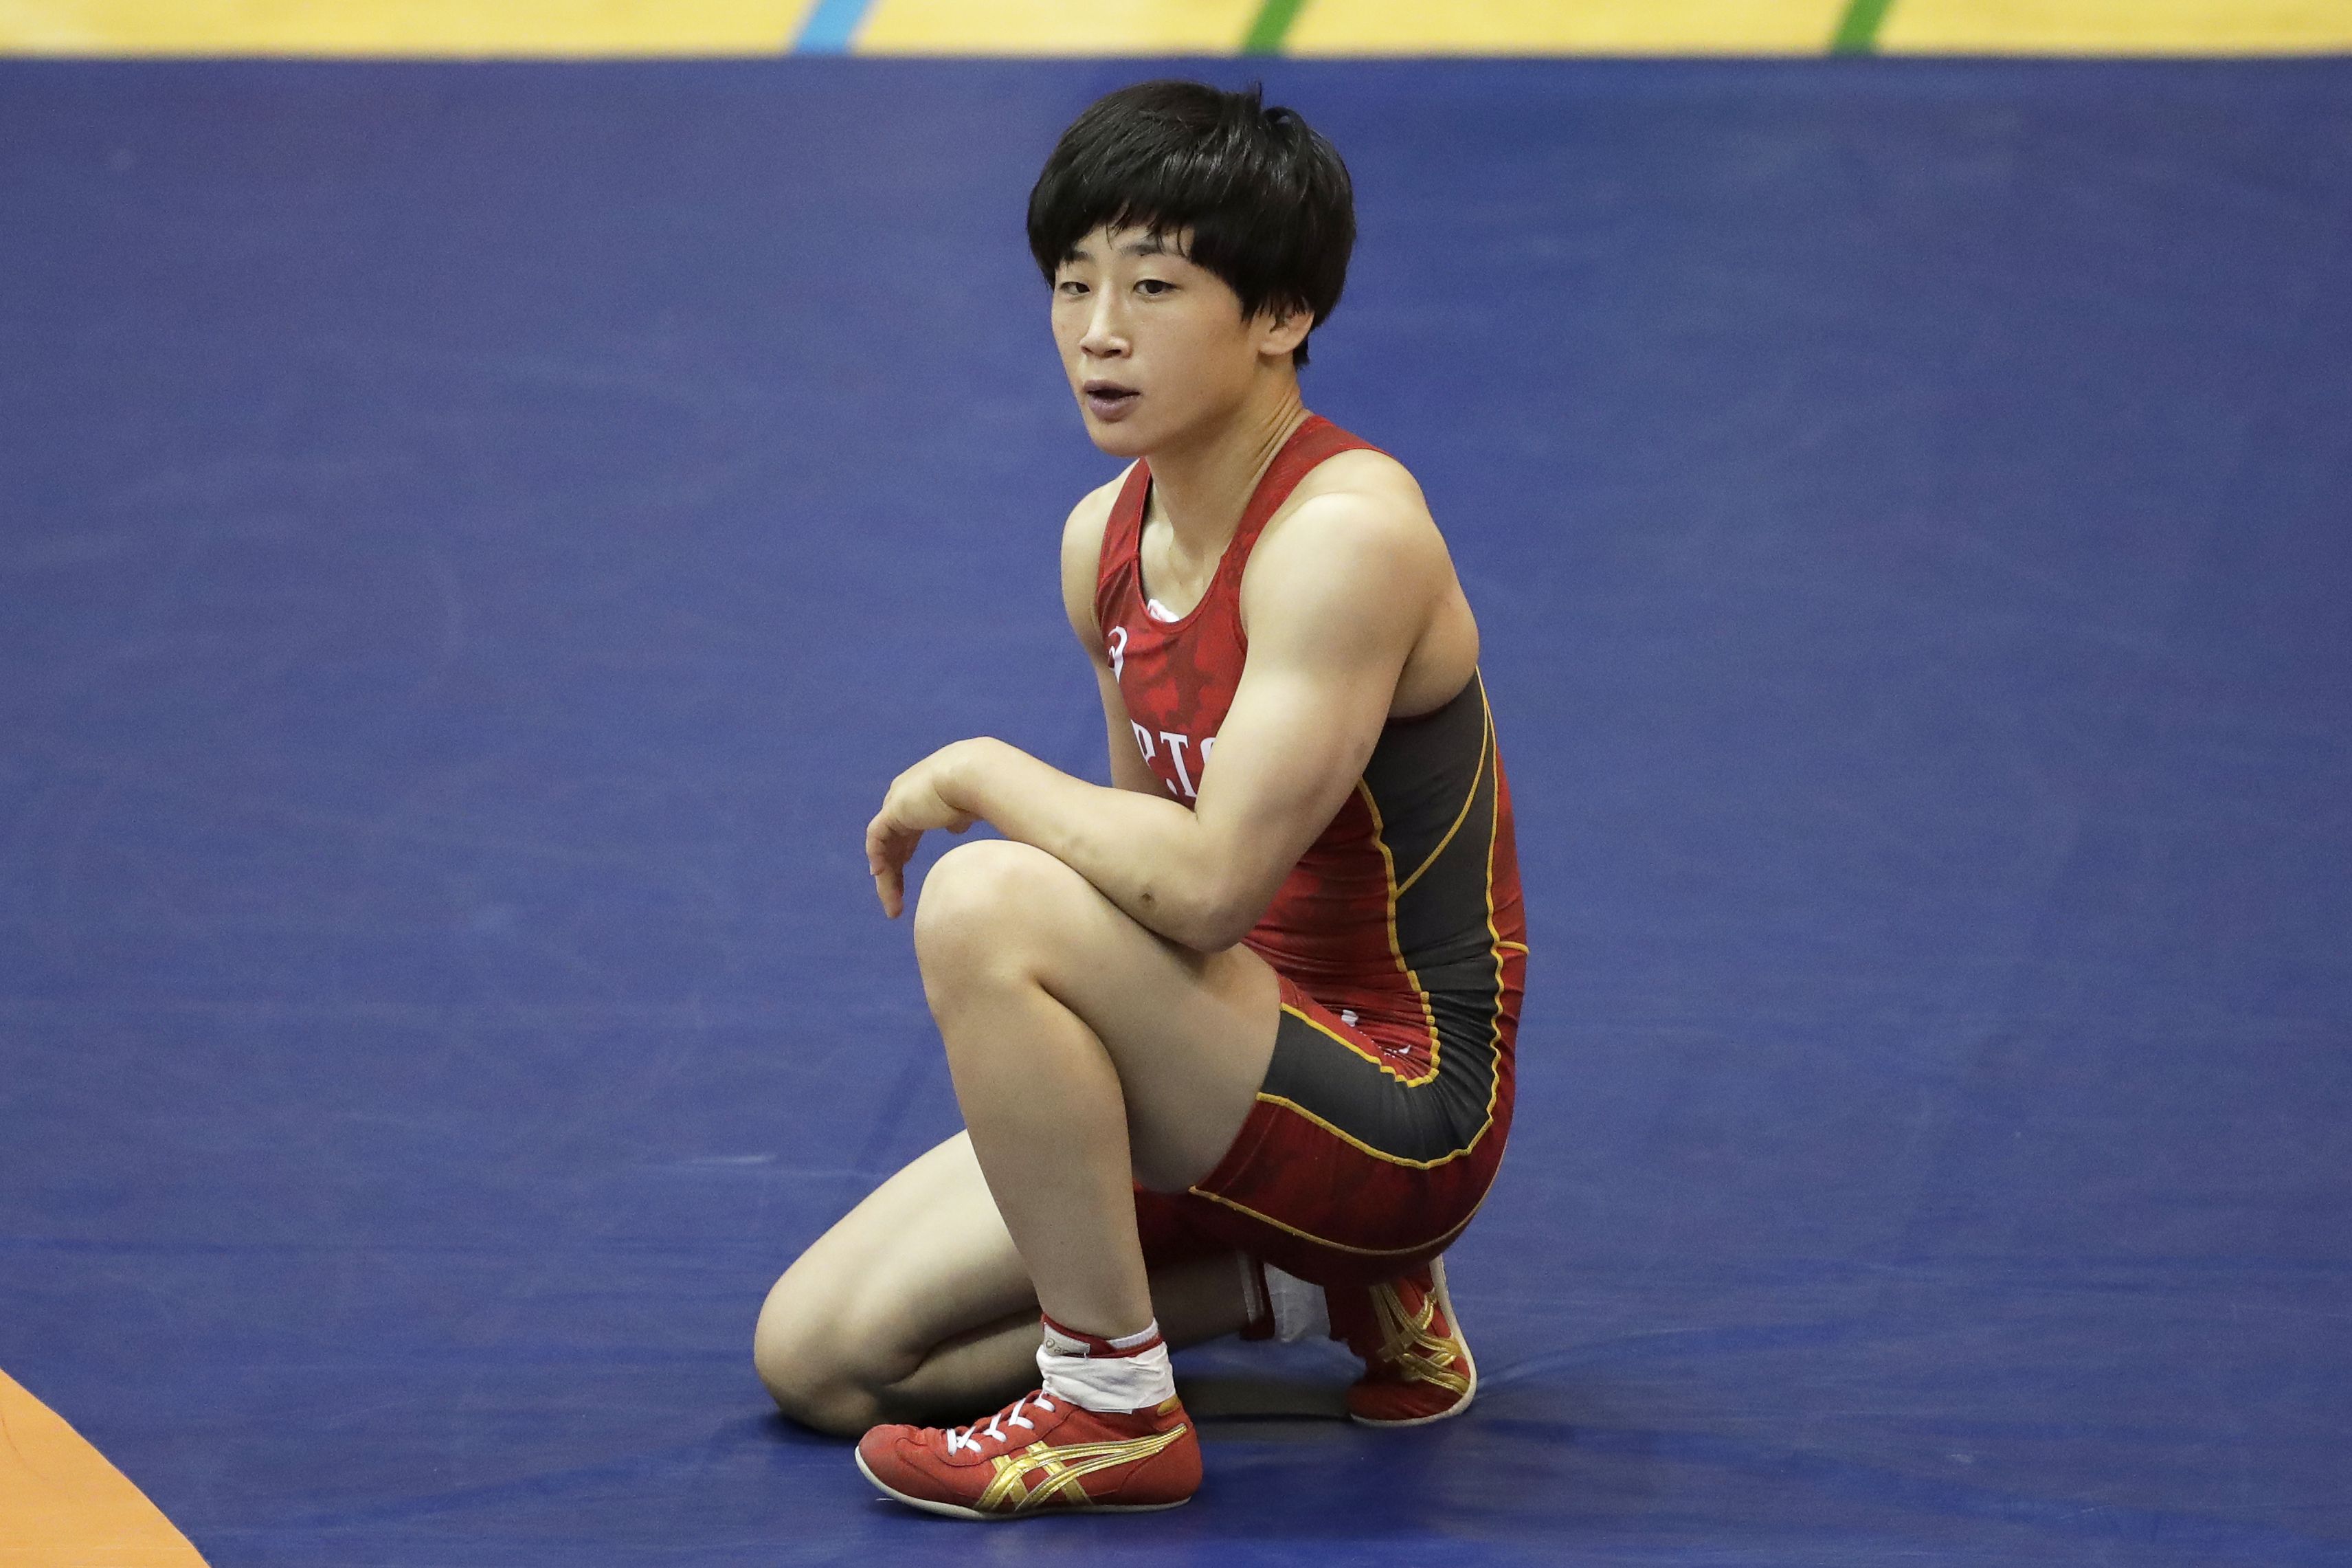 東京 世代交代 世界最強女子が決まる レスリング世界選手権の代表は